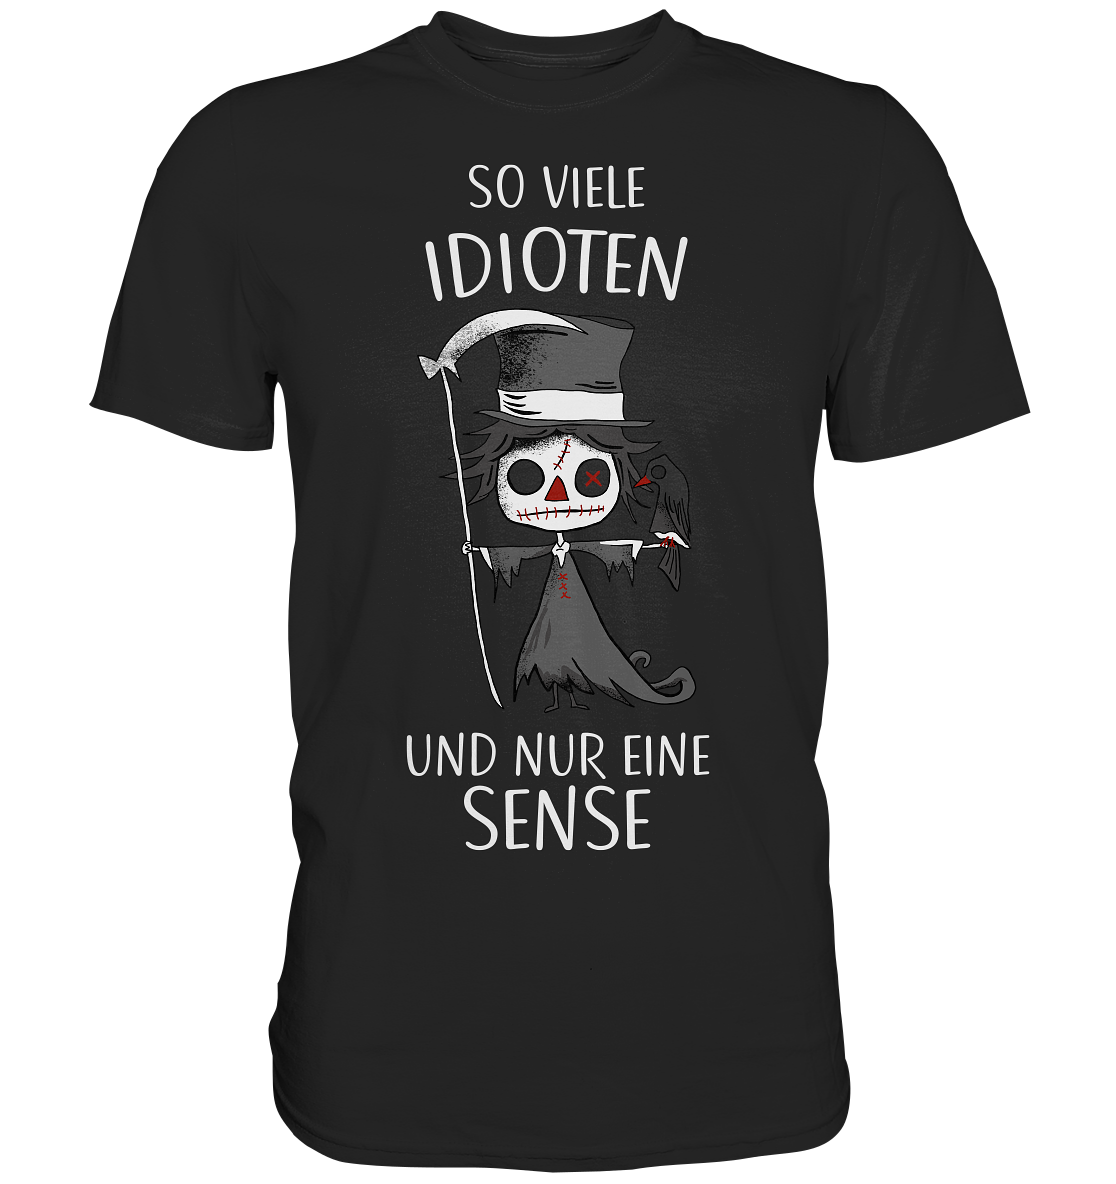 So viele Idioten und nur eine Sense. Gothic Sensemann - Premium Shirt